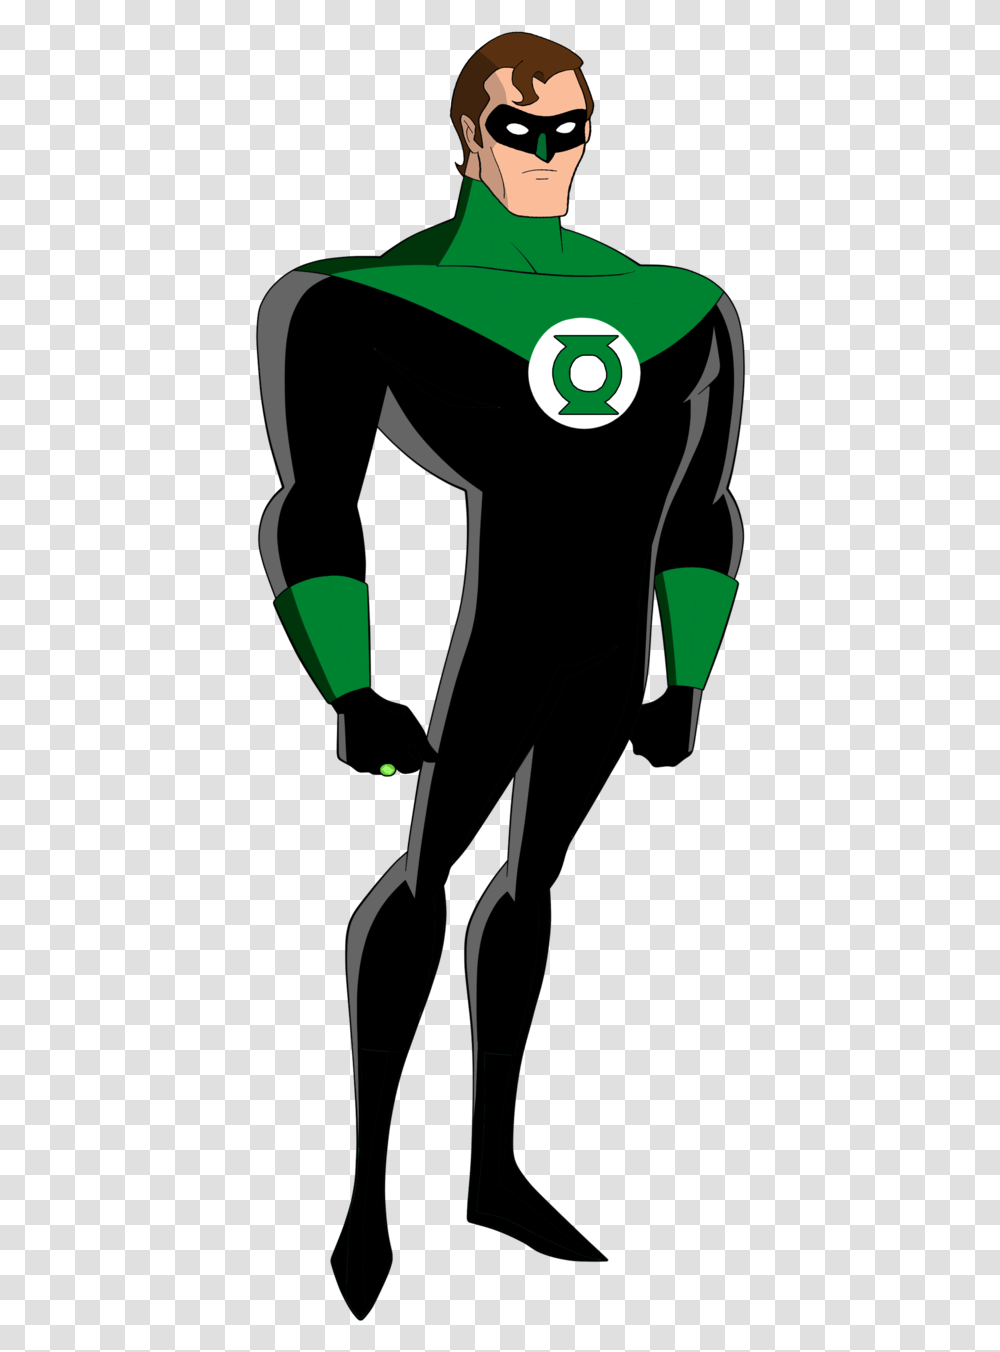 Green Lantern Animated 6 Image Green Lantern John Stewart, Person, Sleeve, Clothing, Face Transparent Png